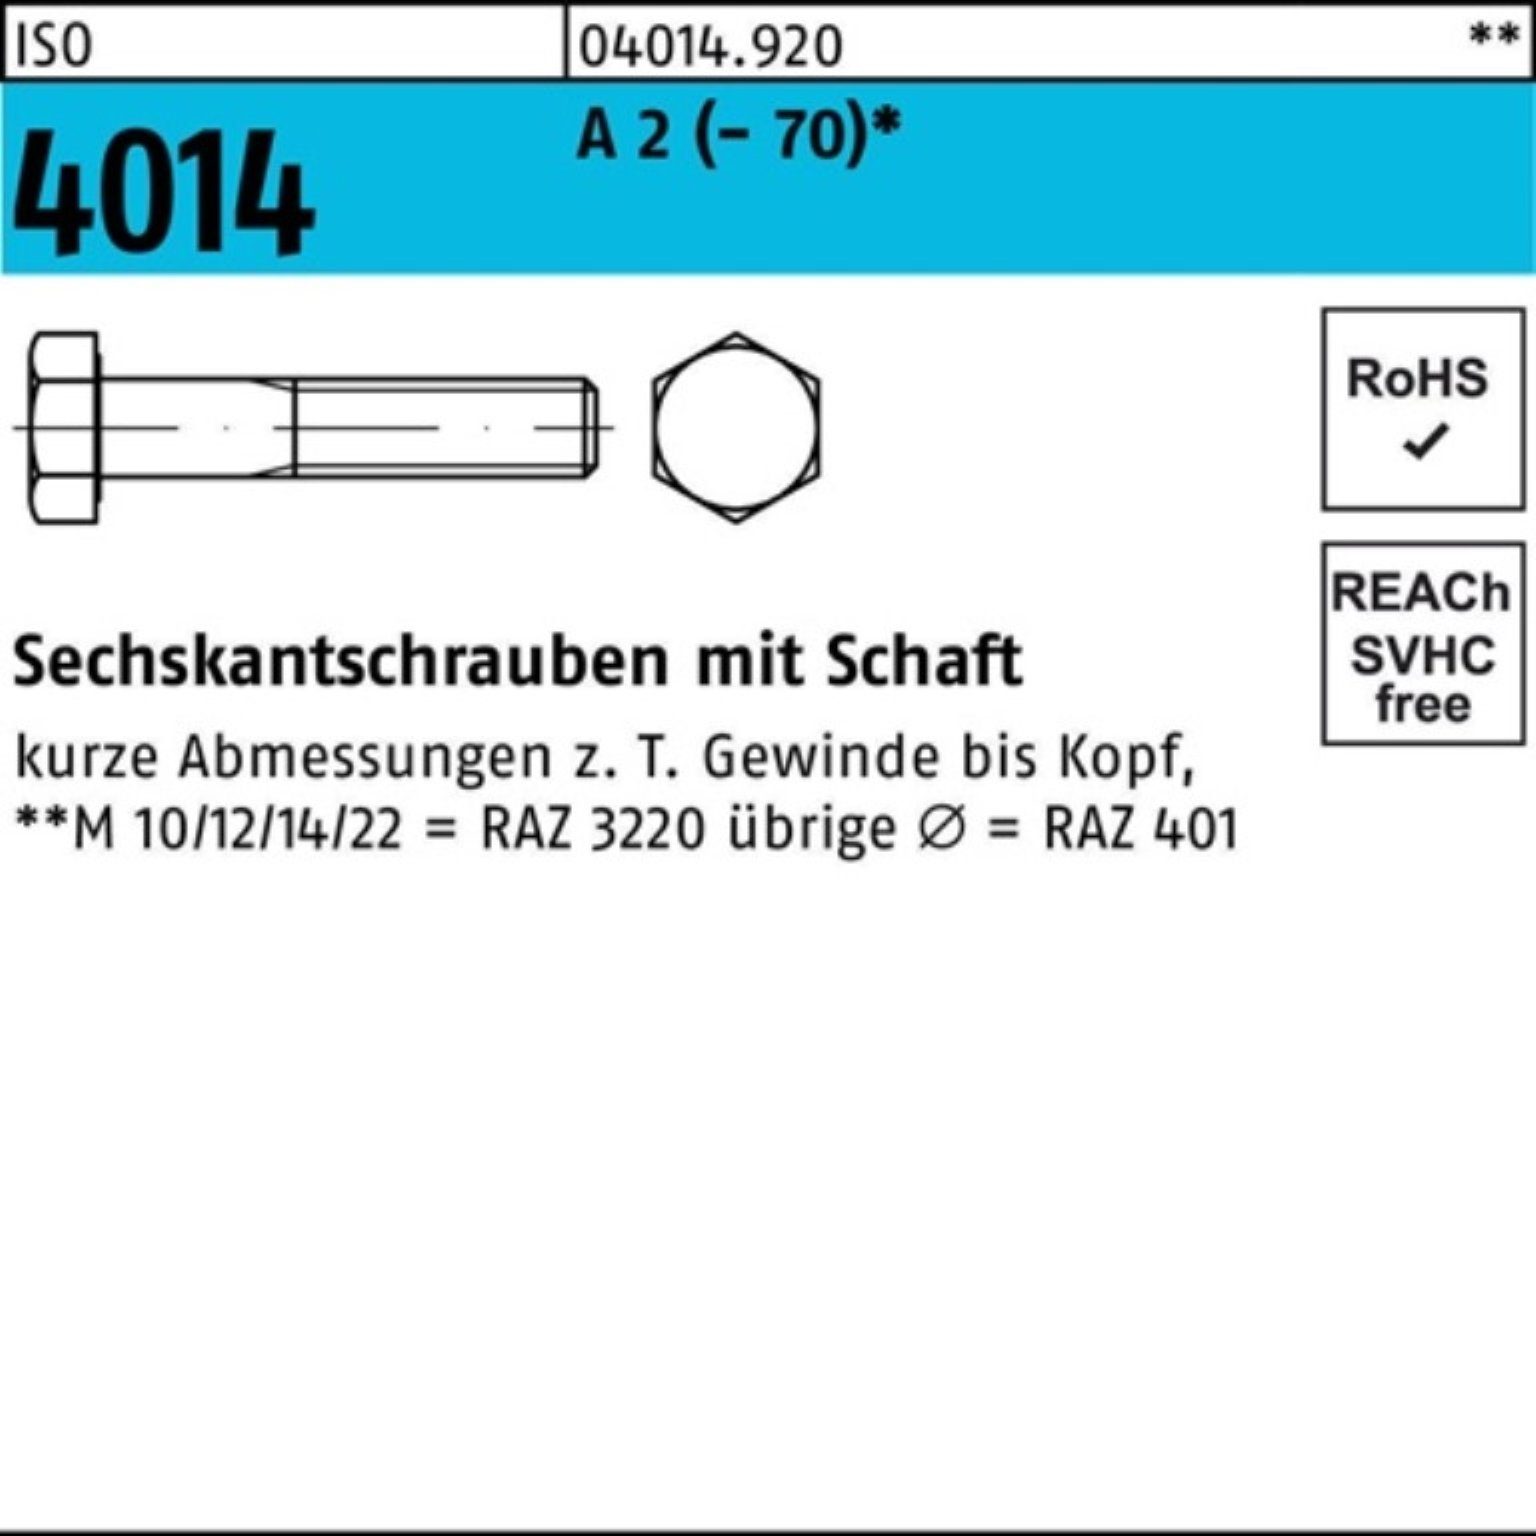 Bufab Sechskantschraube 100er Pack Sechskantschraube ISO 4014 Schaft M12x 200 A 2 (70) 1 St